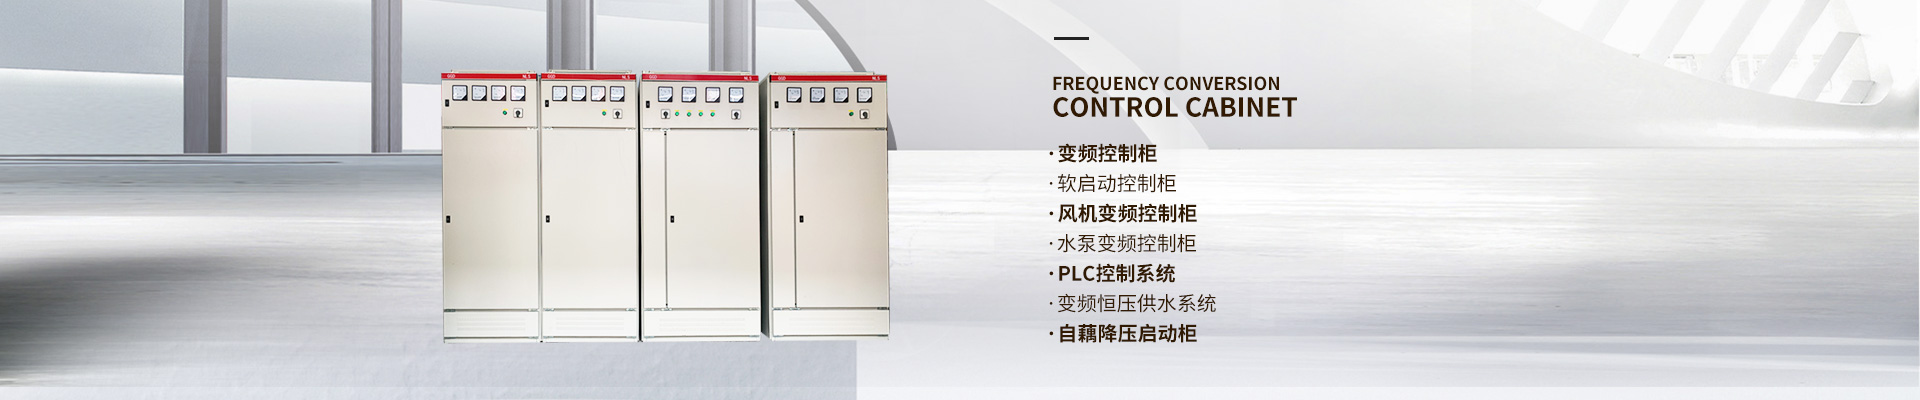 長沙文鋮電氣設備有限公司_長沙變頻器|長沙控制柜